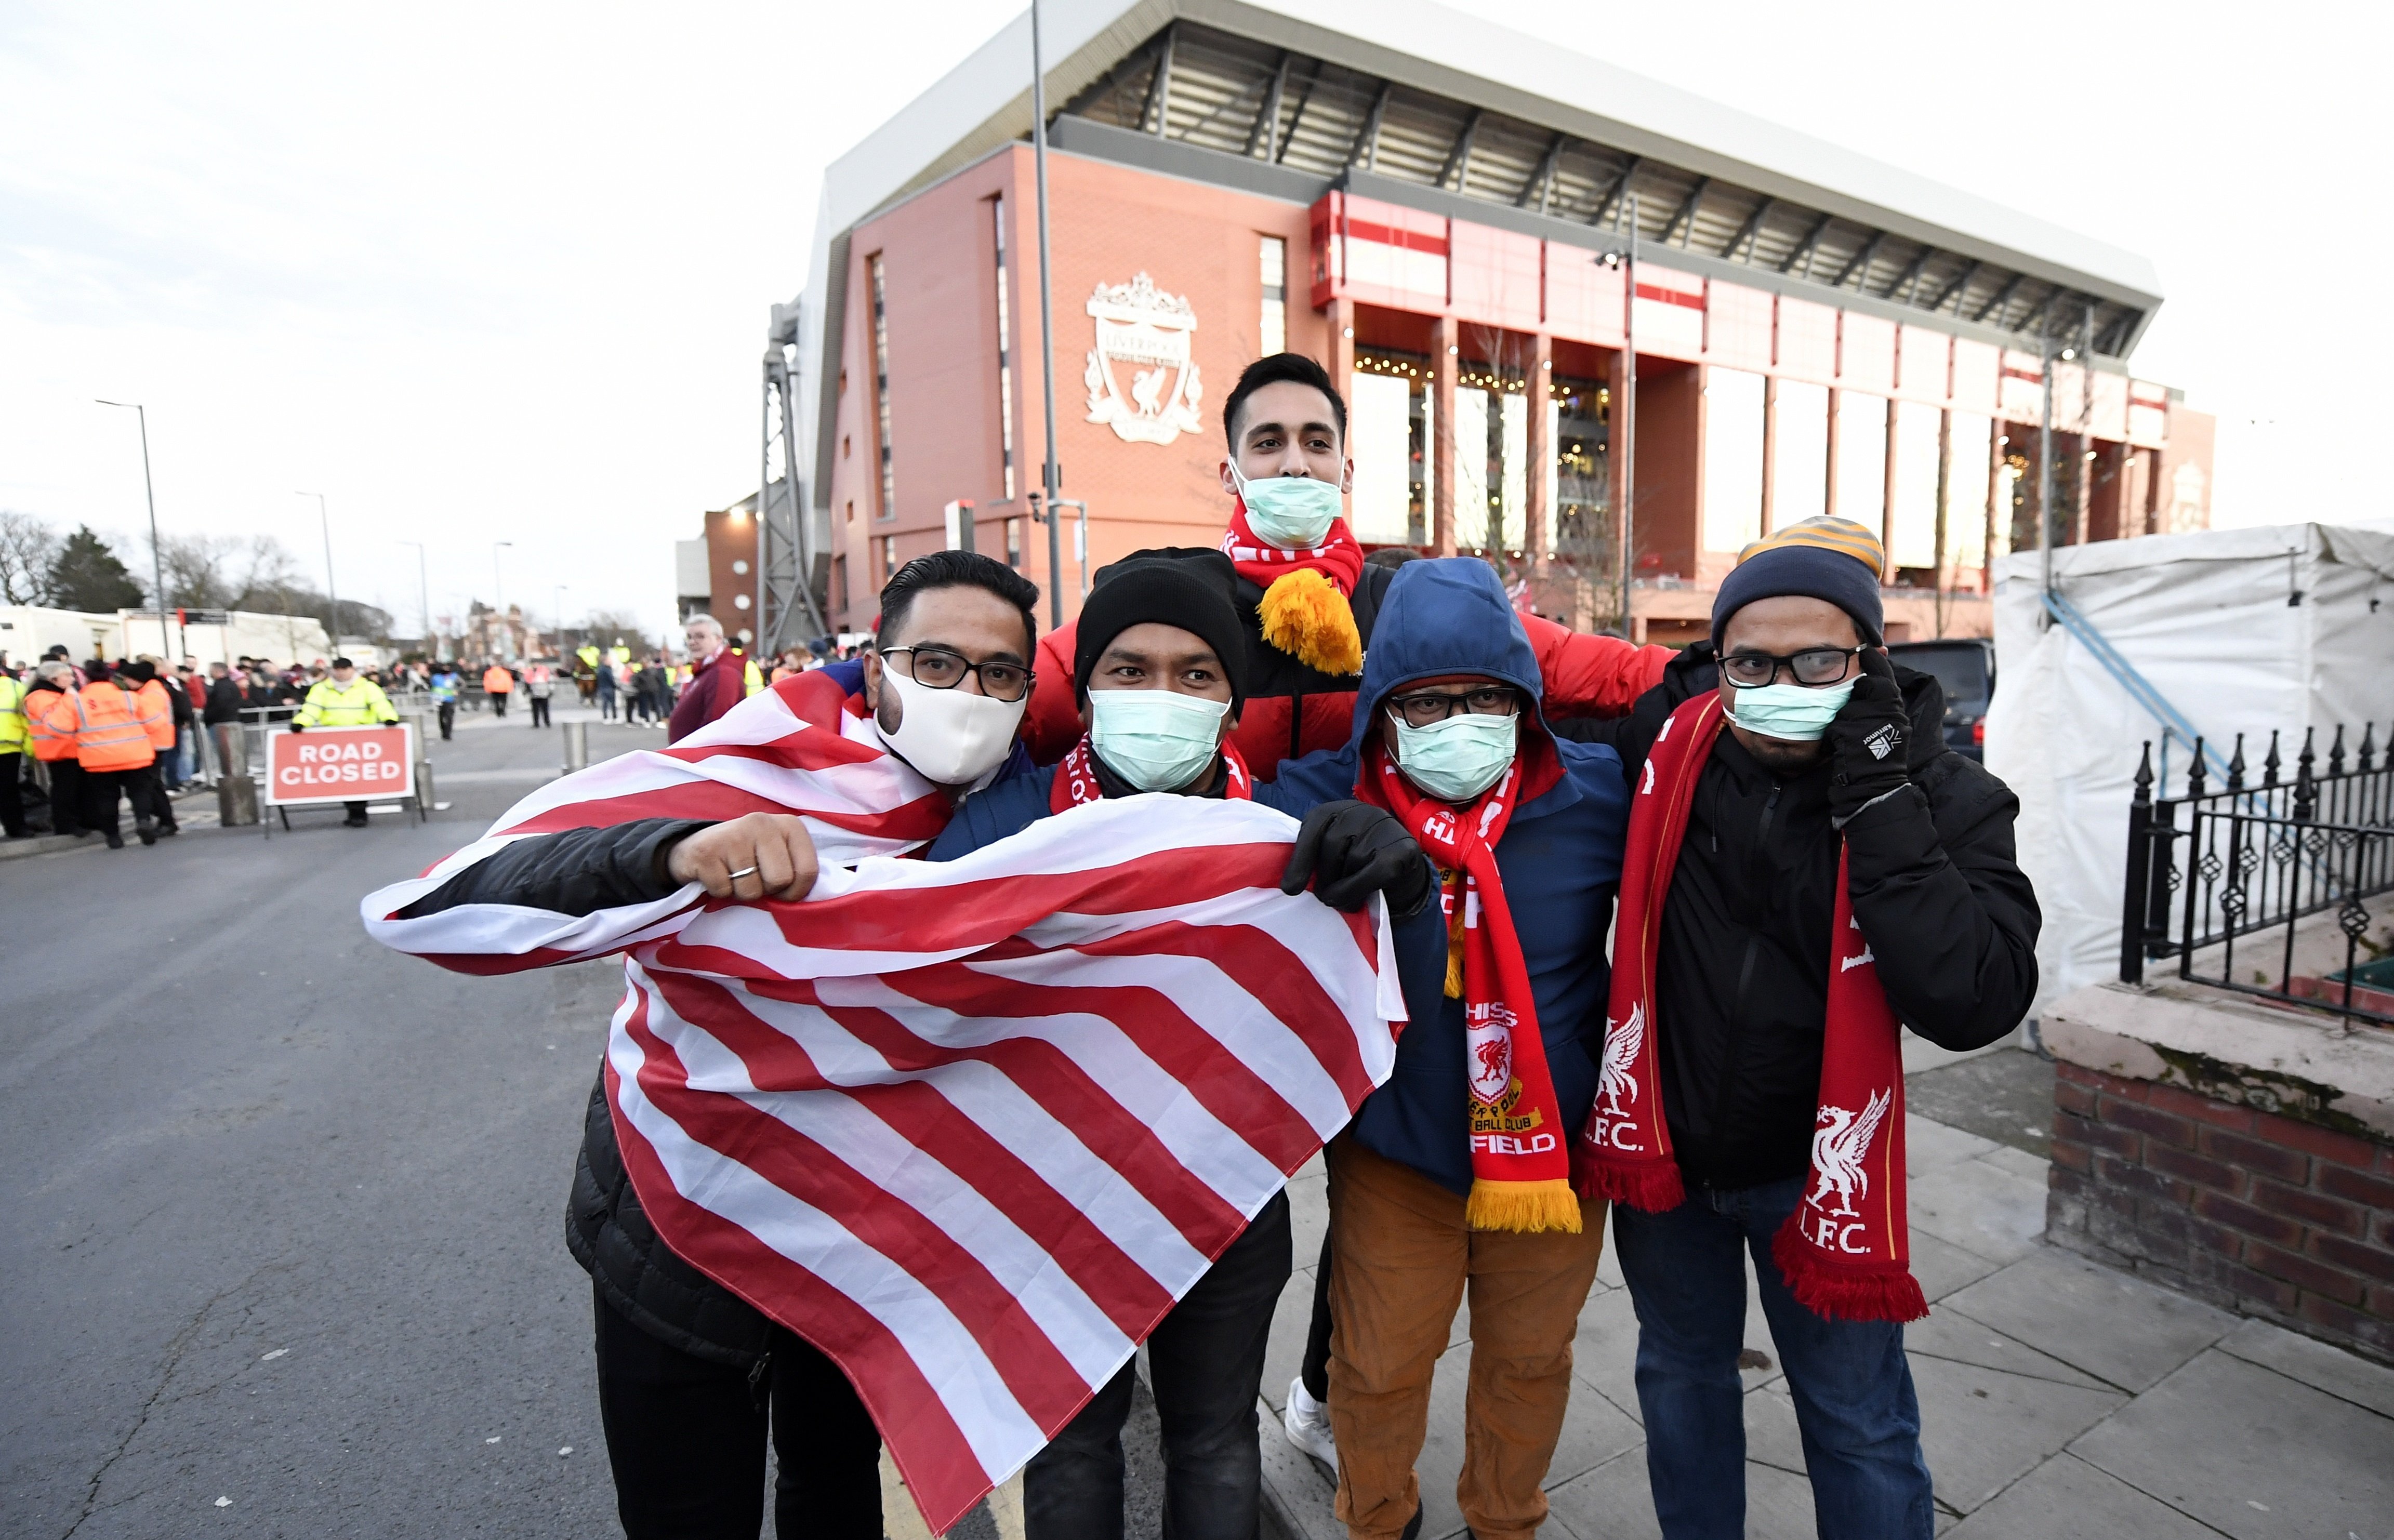 Acusen els seguidors de l'Atlètic de propagar el coronavirus a Liverpool